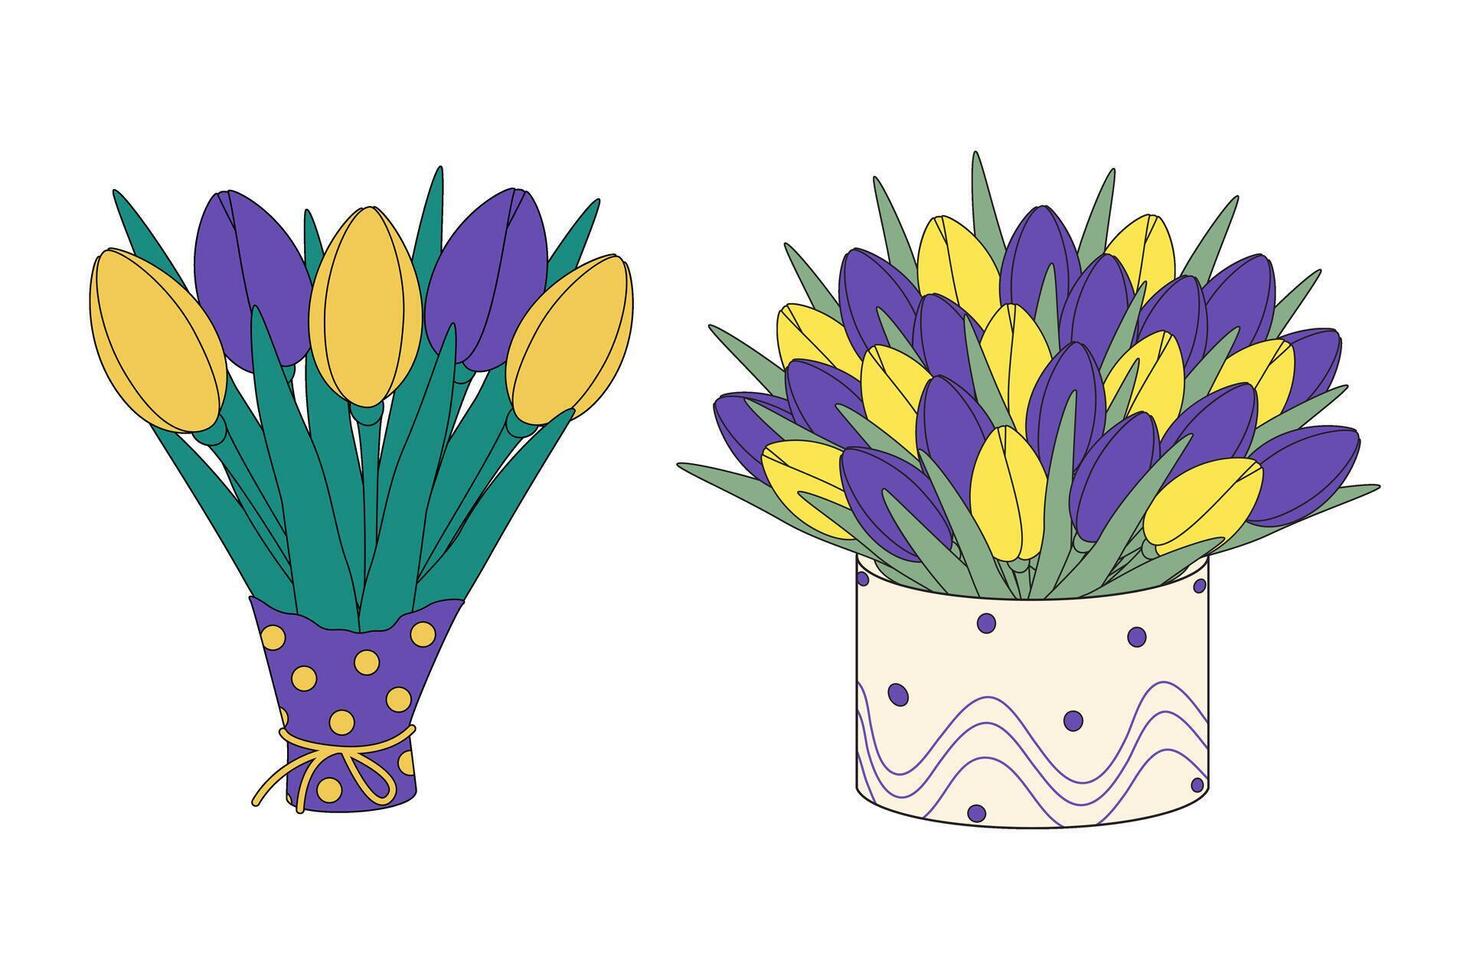 reeks 2 tulpen boeketten in omhulsel papier en doos. ontwerp elementen voor lente groeten of kaarten vector